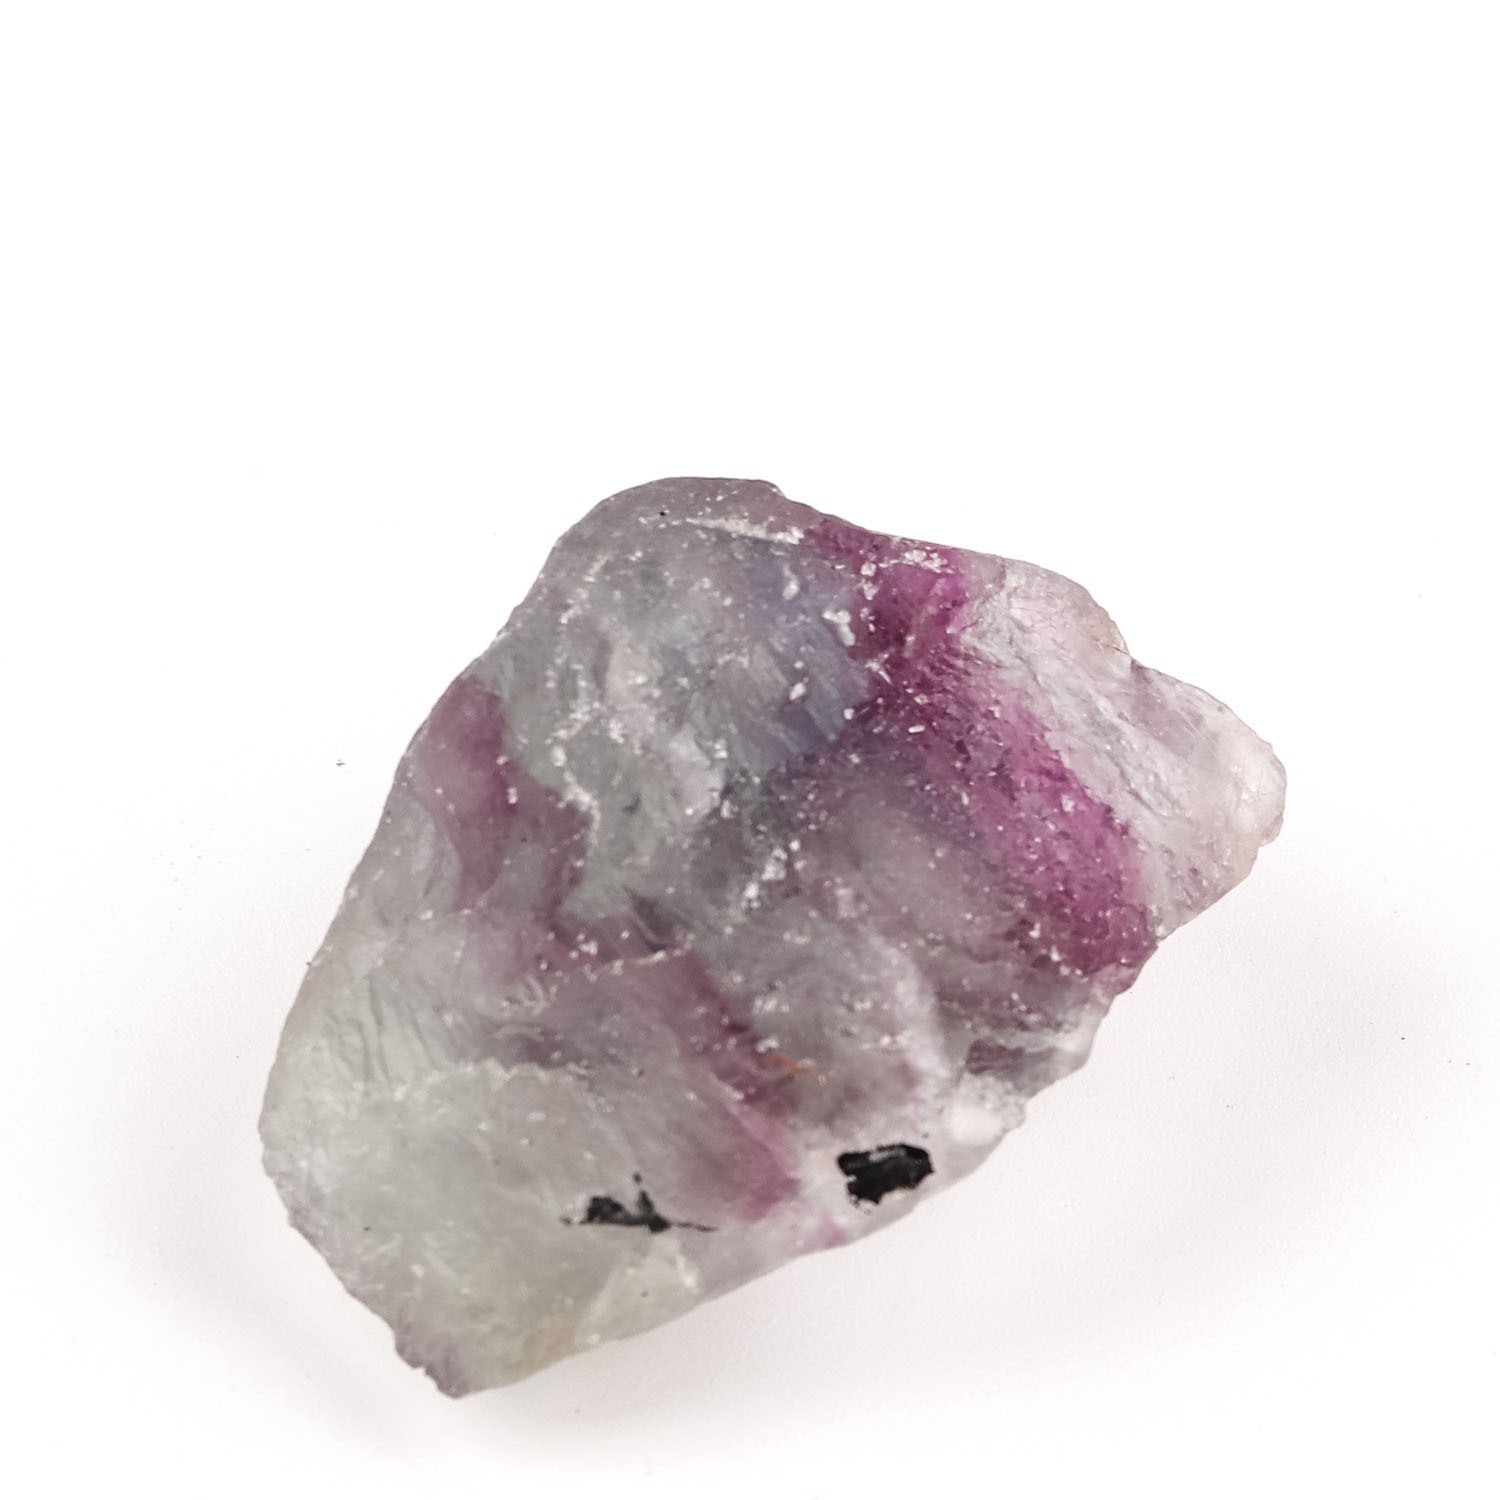 1:purple fluorite